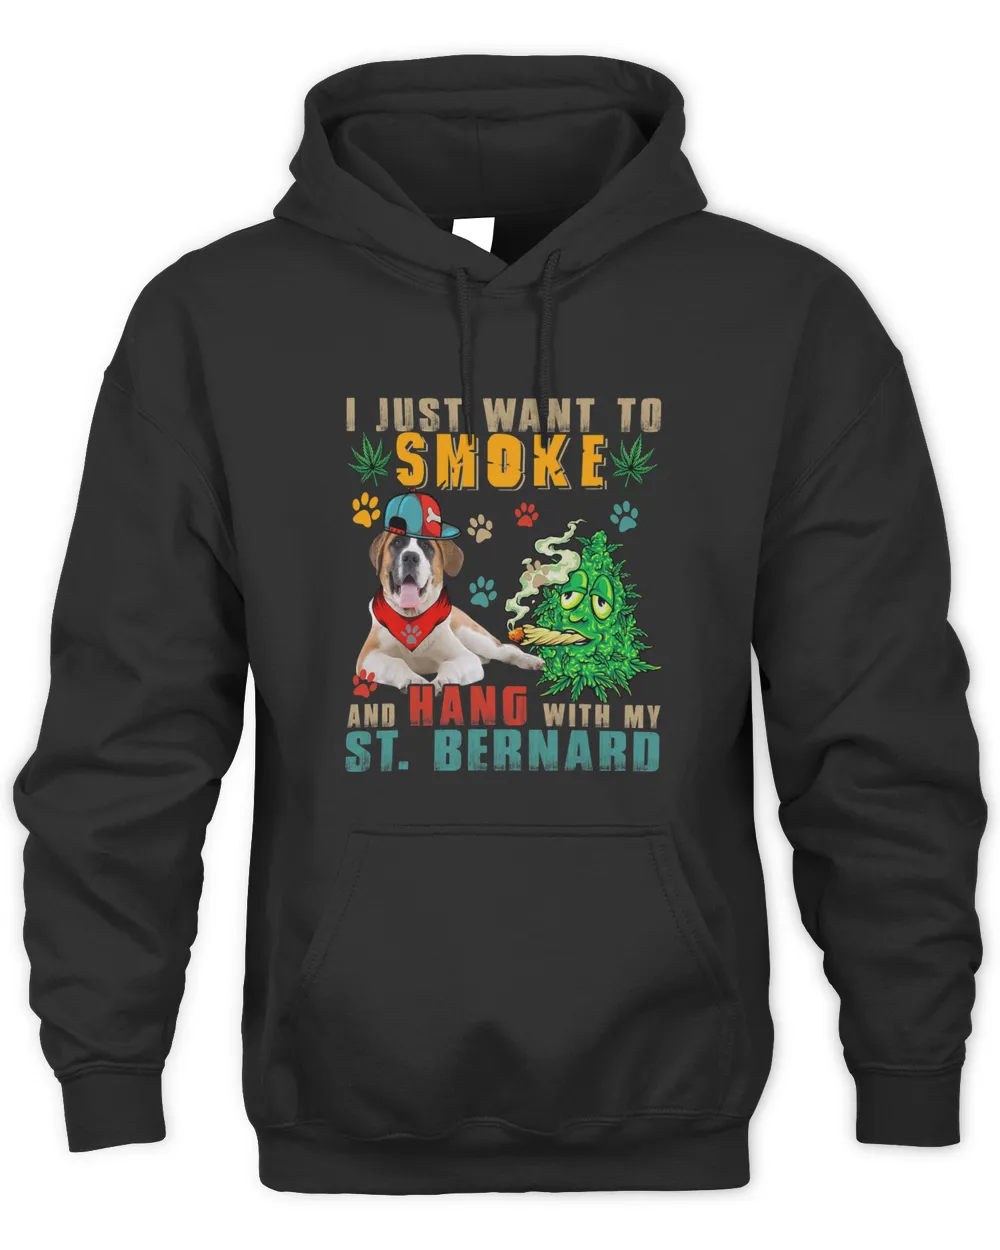 Vintage Smoke And Hang With My St. Bernard Funny Smoker Weed